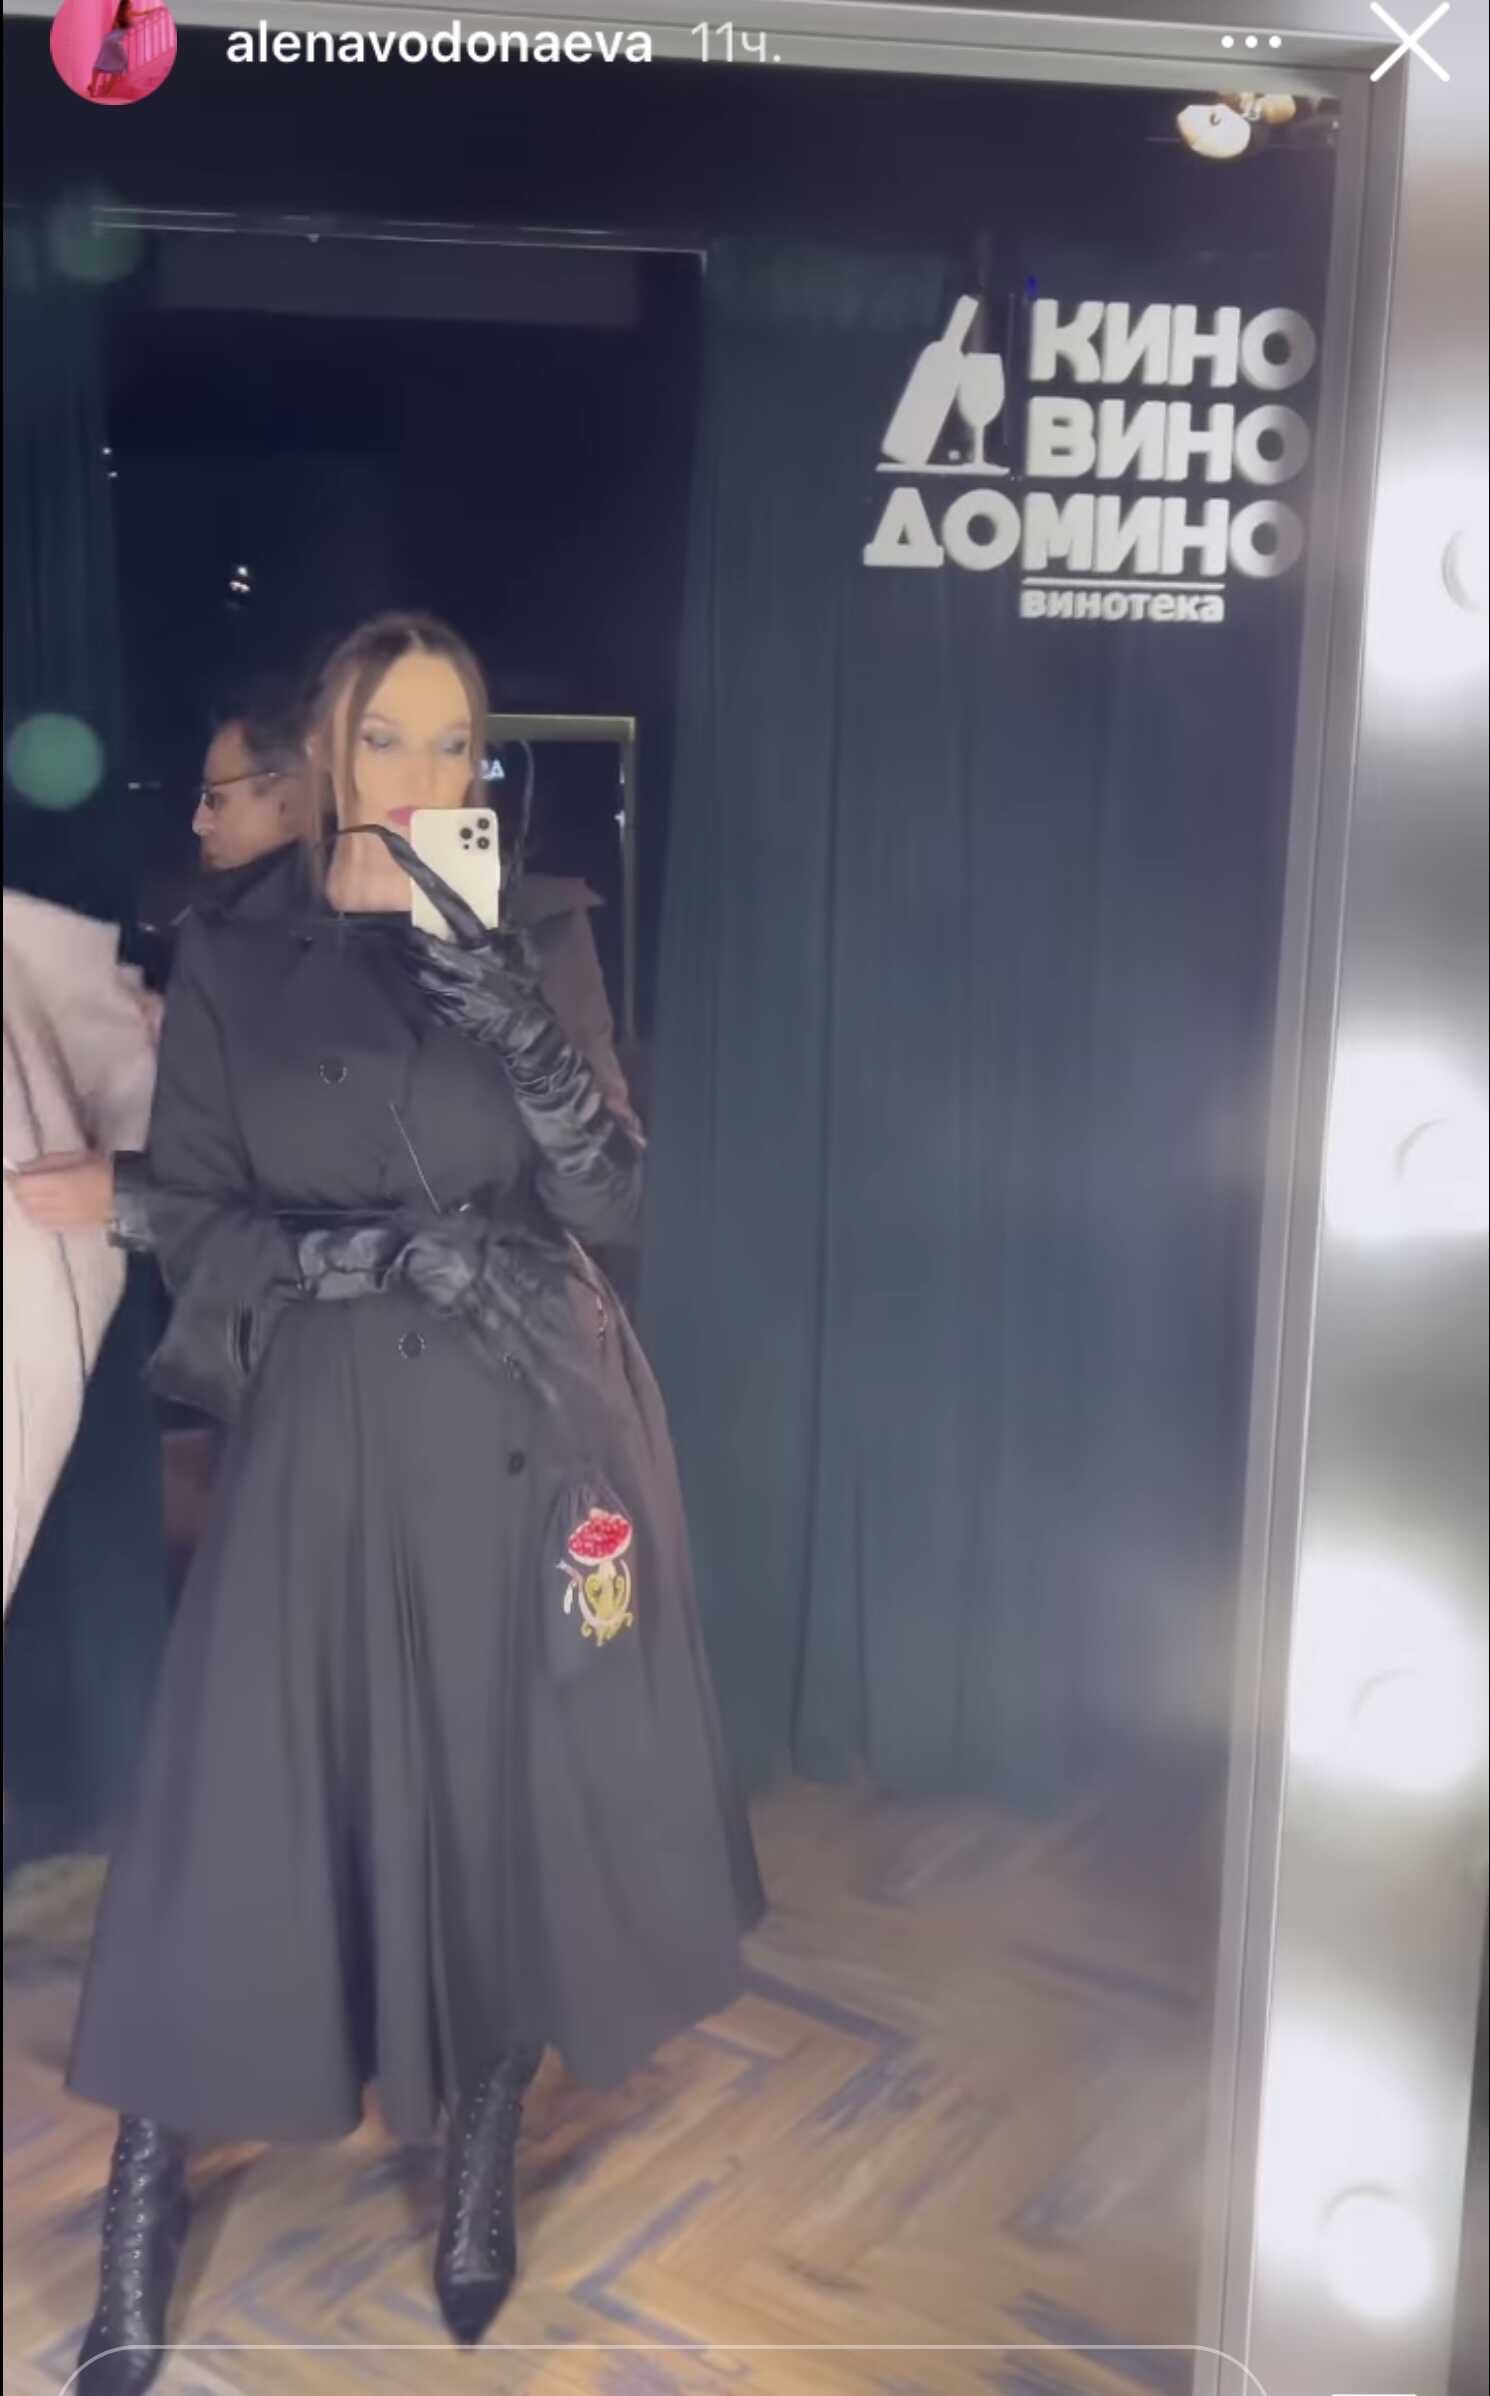 Алена Водонаева пришла на премьеру в перчатках а-ля Фредди Крюгер и посетовала, какой это тяжёлый труд - ходить по мероприятиям